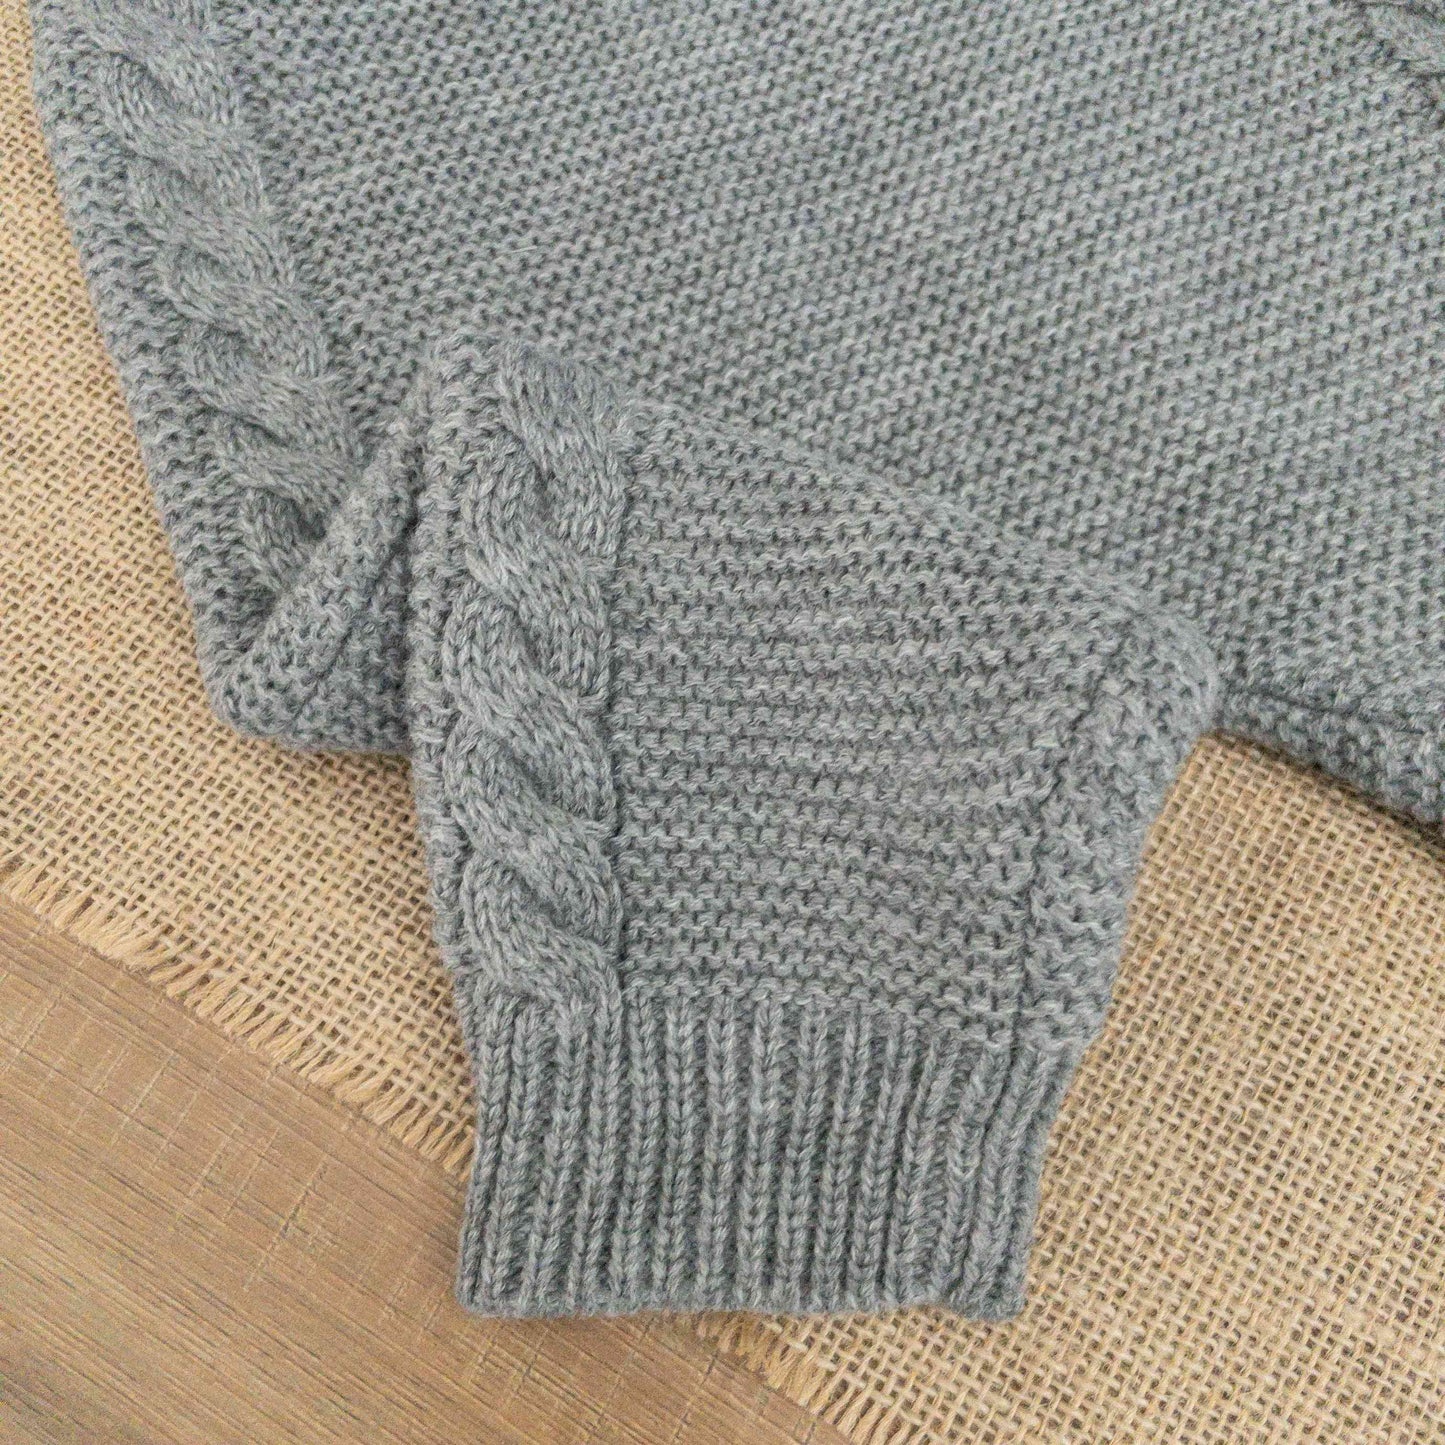 dettaglio lavorazione a maglia pagliaccetto grigio neonato